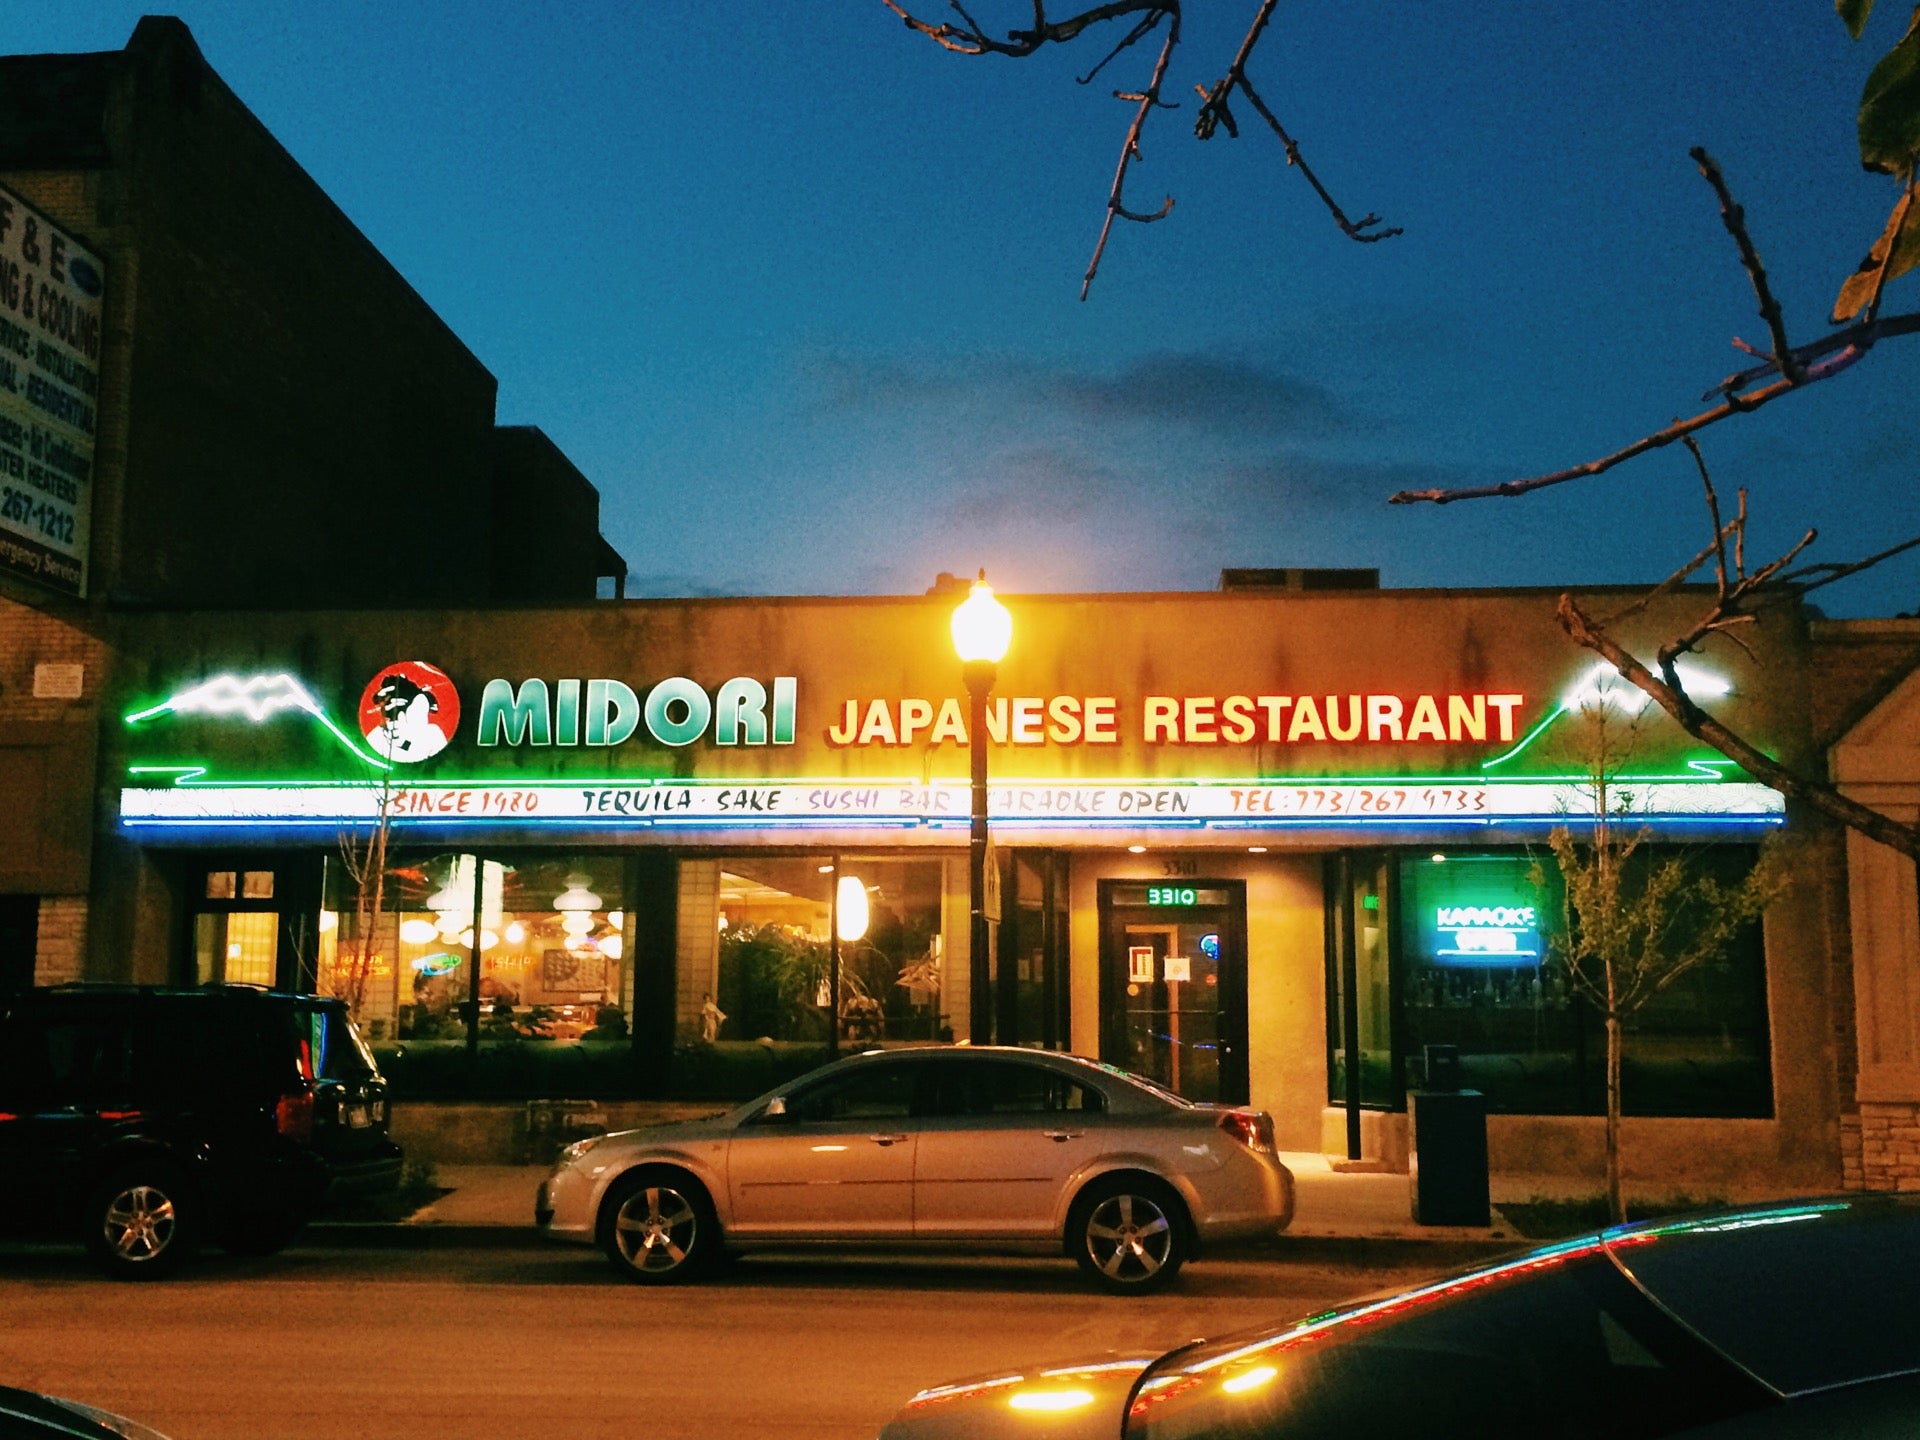 Illinois Skokie Midori Japanese Restaurant photo 7